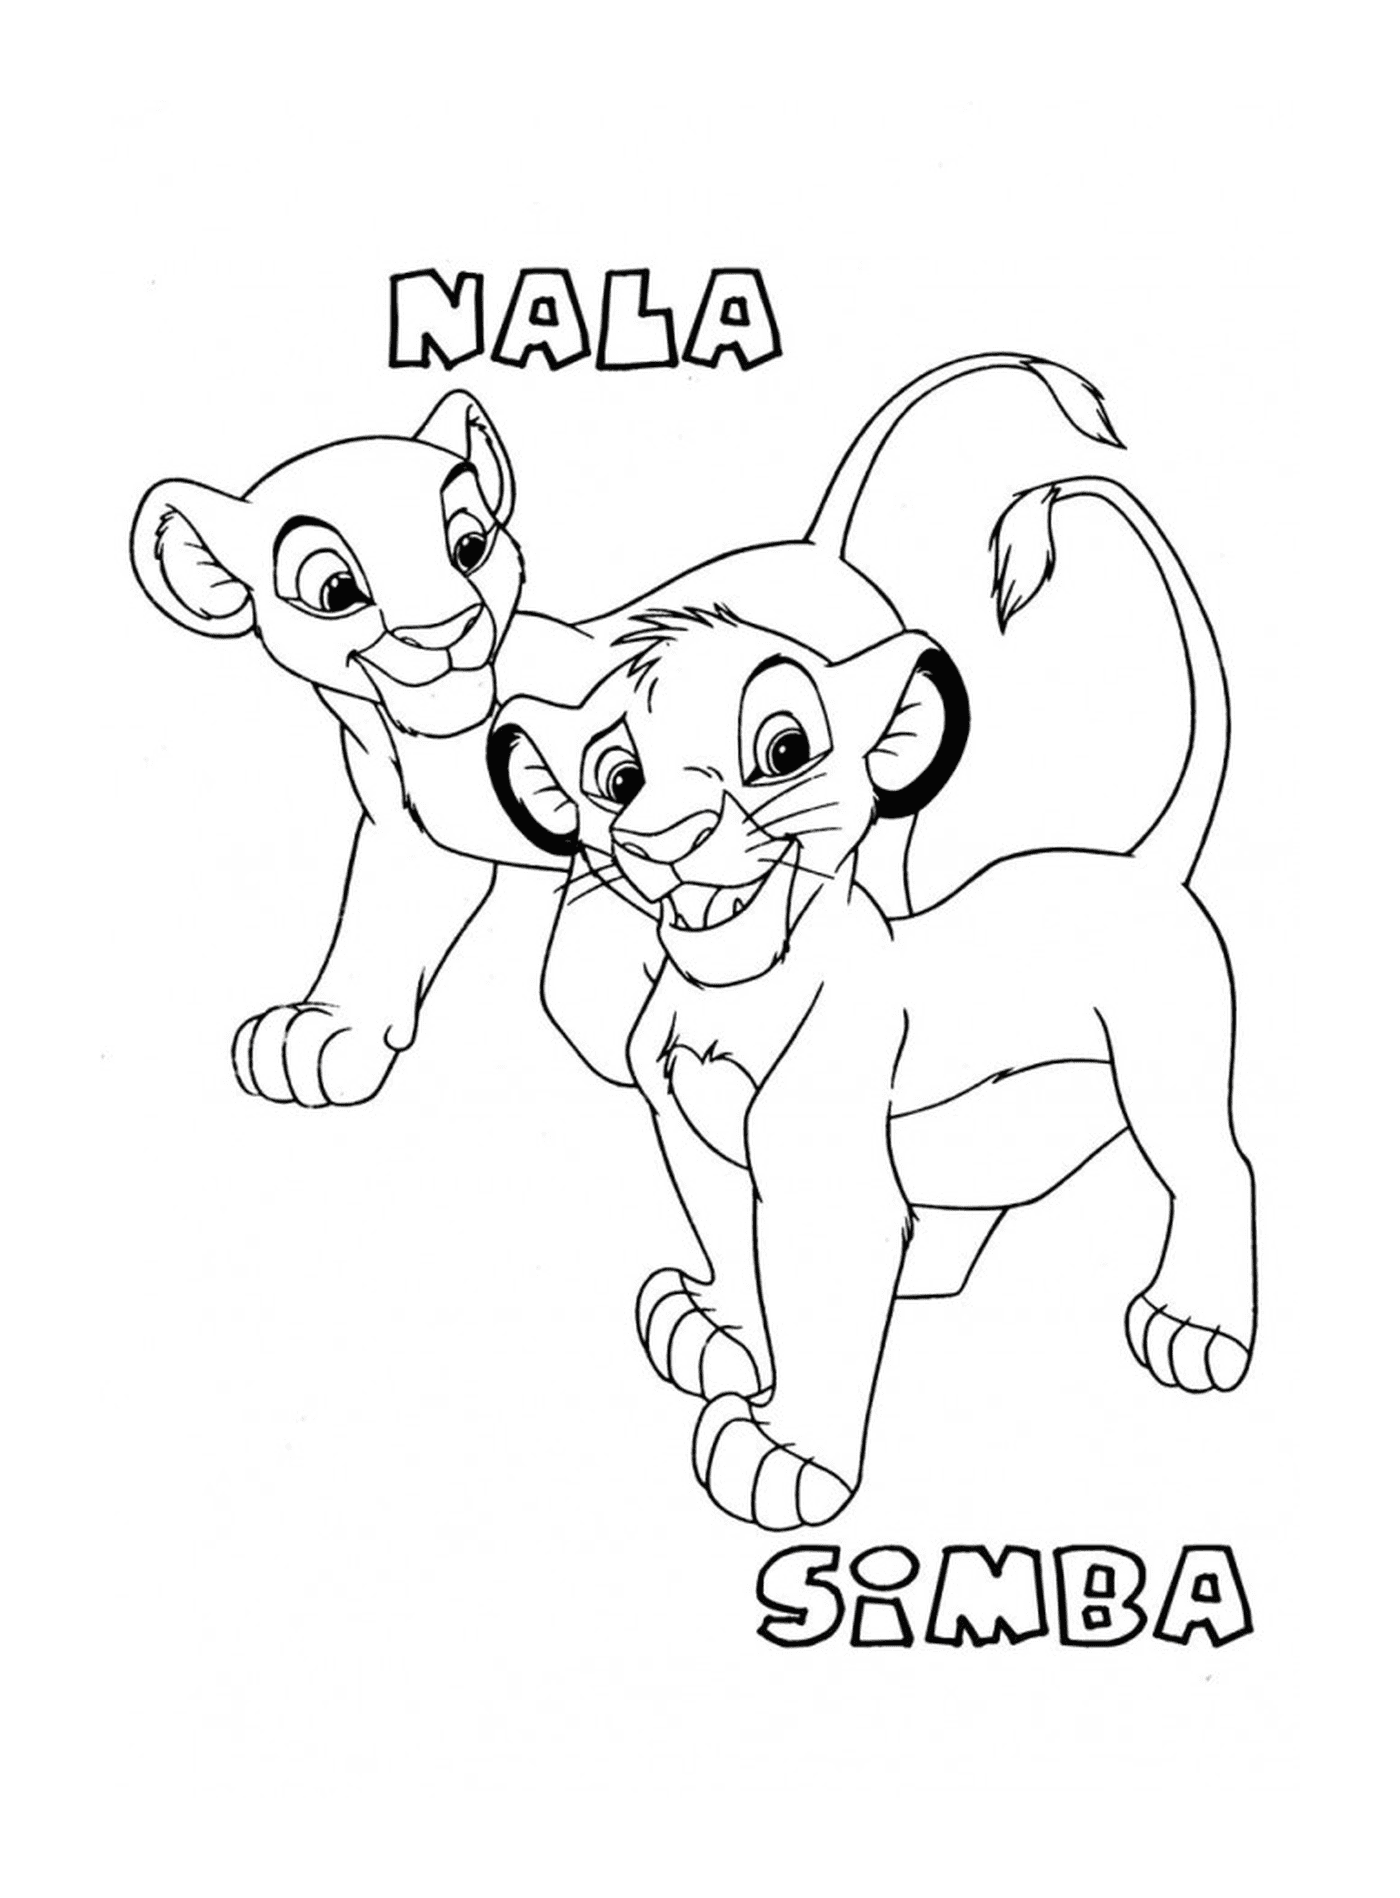  狮子王中的辛巴和纳拉婴儿 